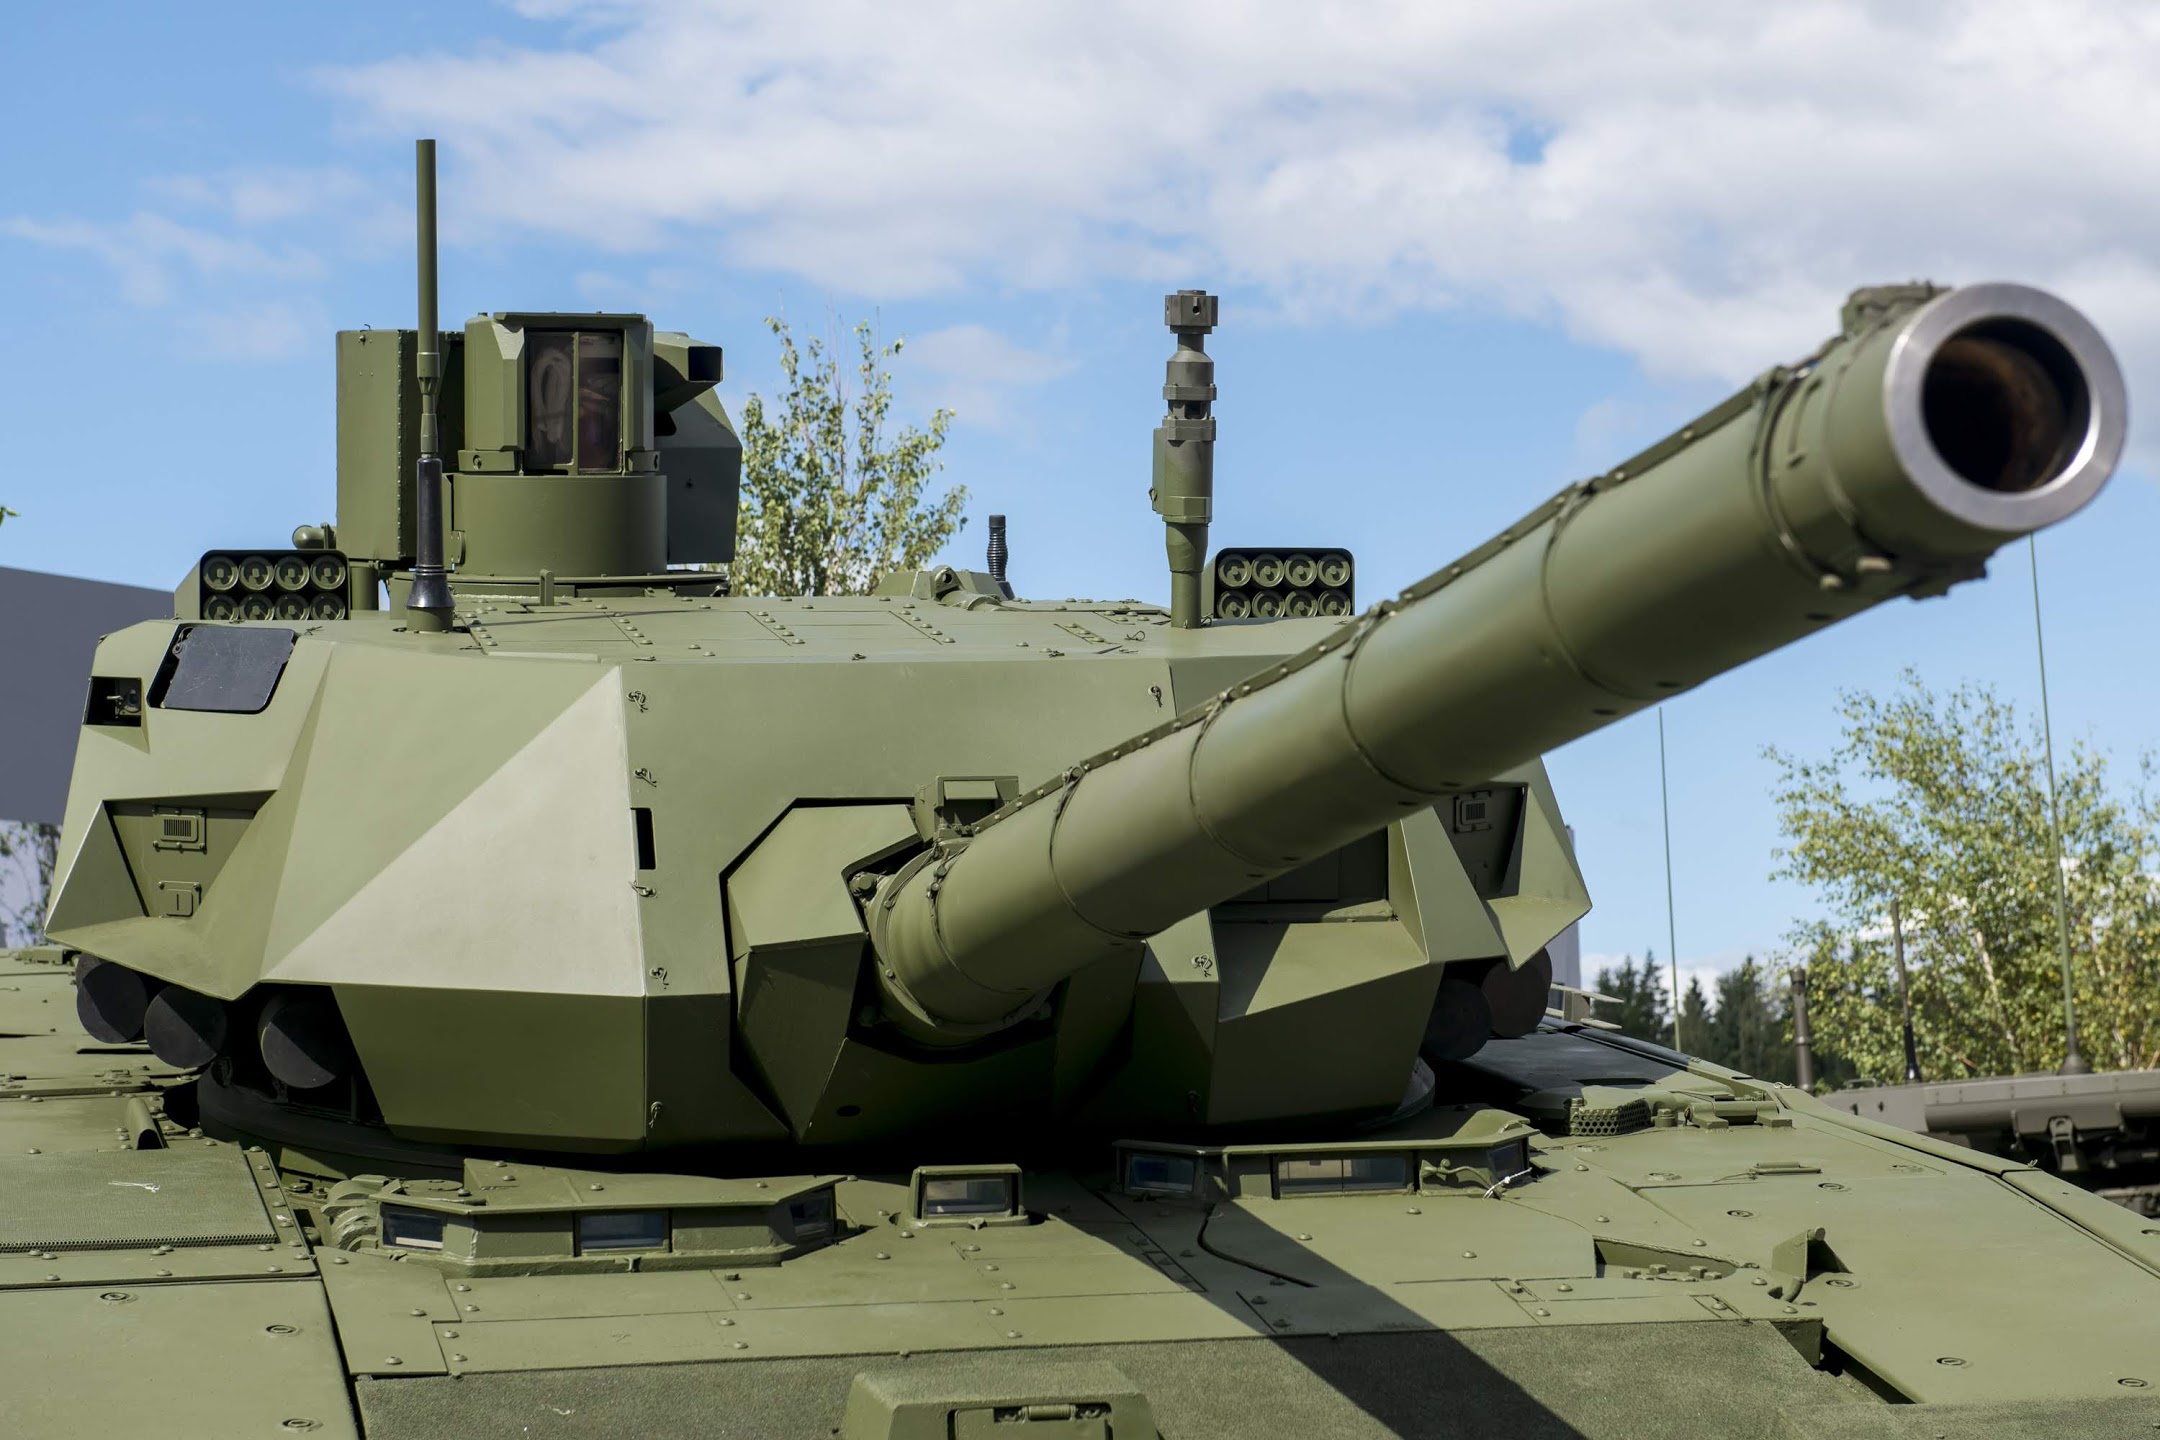 Уралвагонзавод впервые покажет за рубежом танк Т-14 